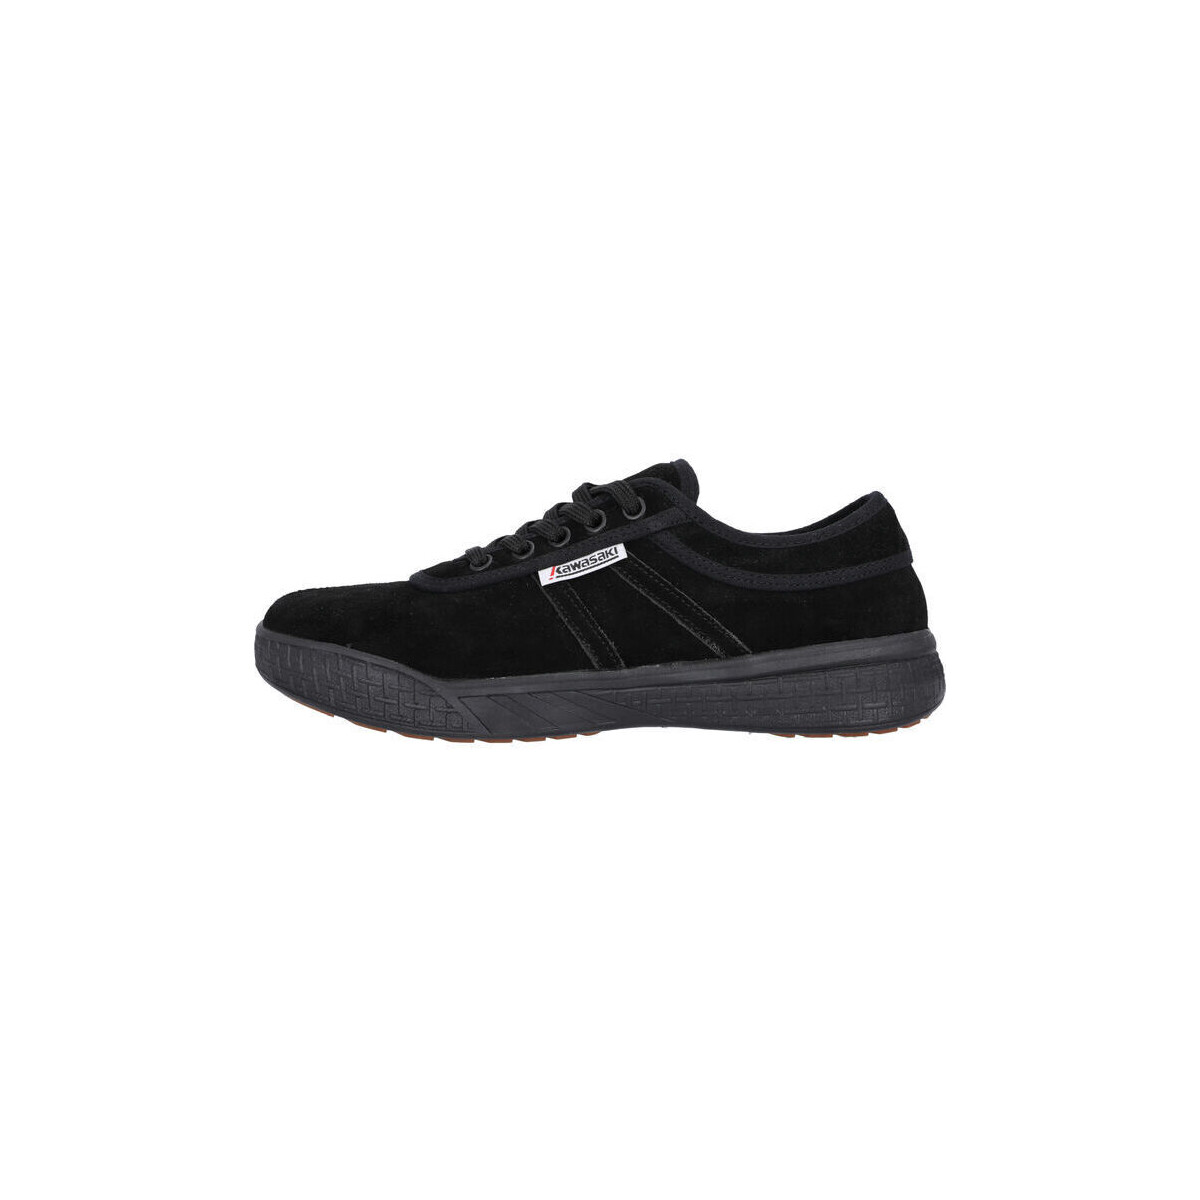 Zapatos Deportivas Moda Kawasaki Leap Suede Shoe K204414-ES 1001S Black Solid Negro